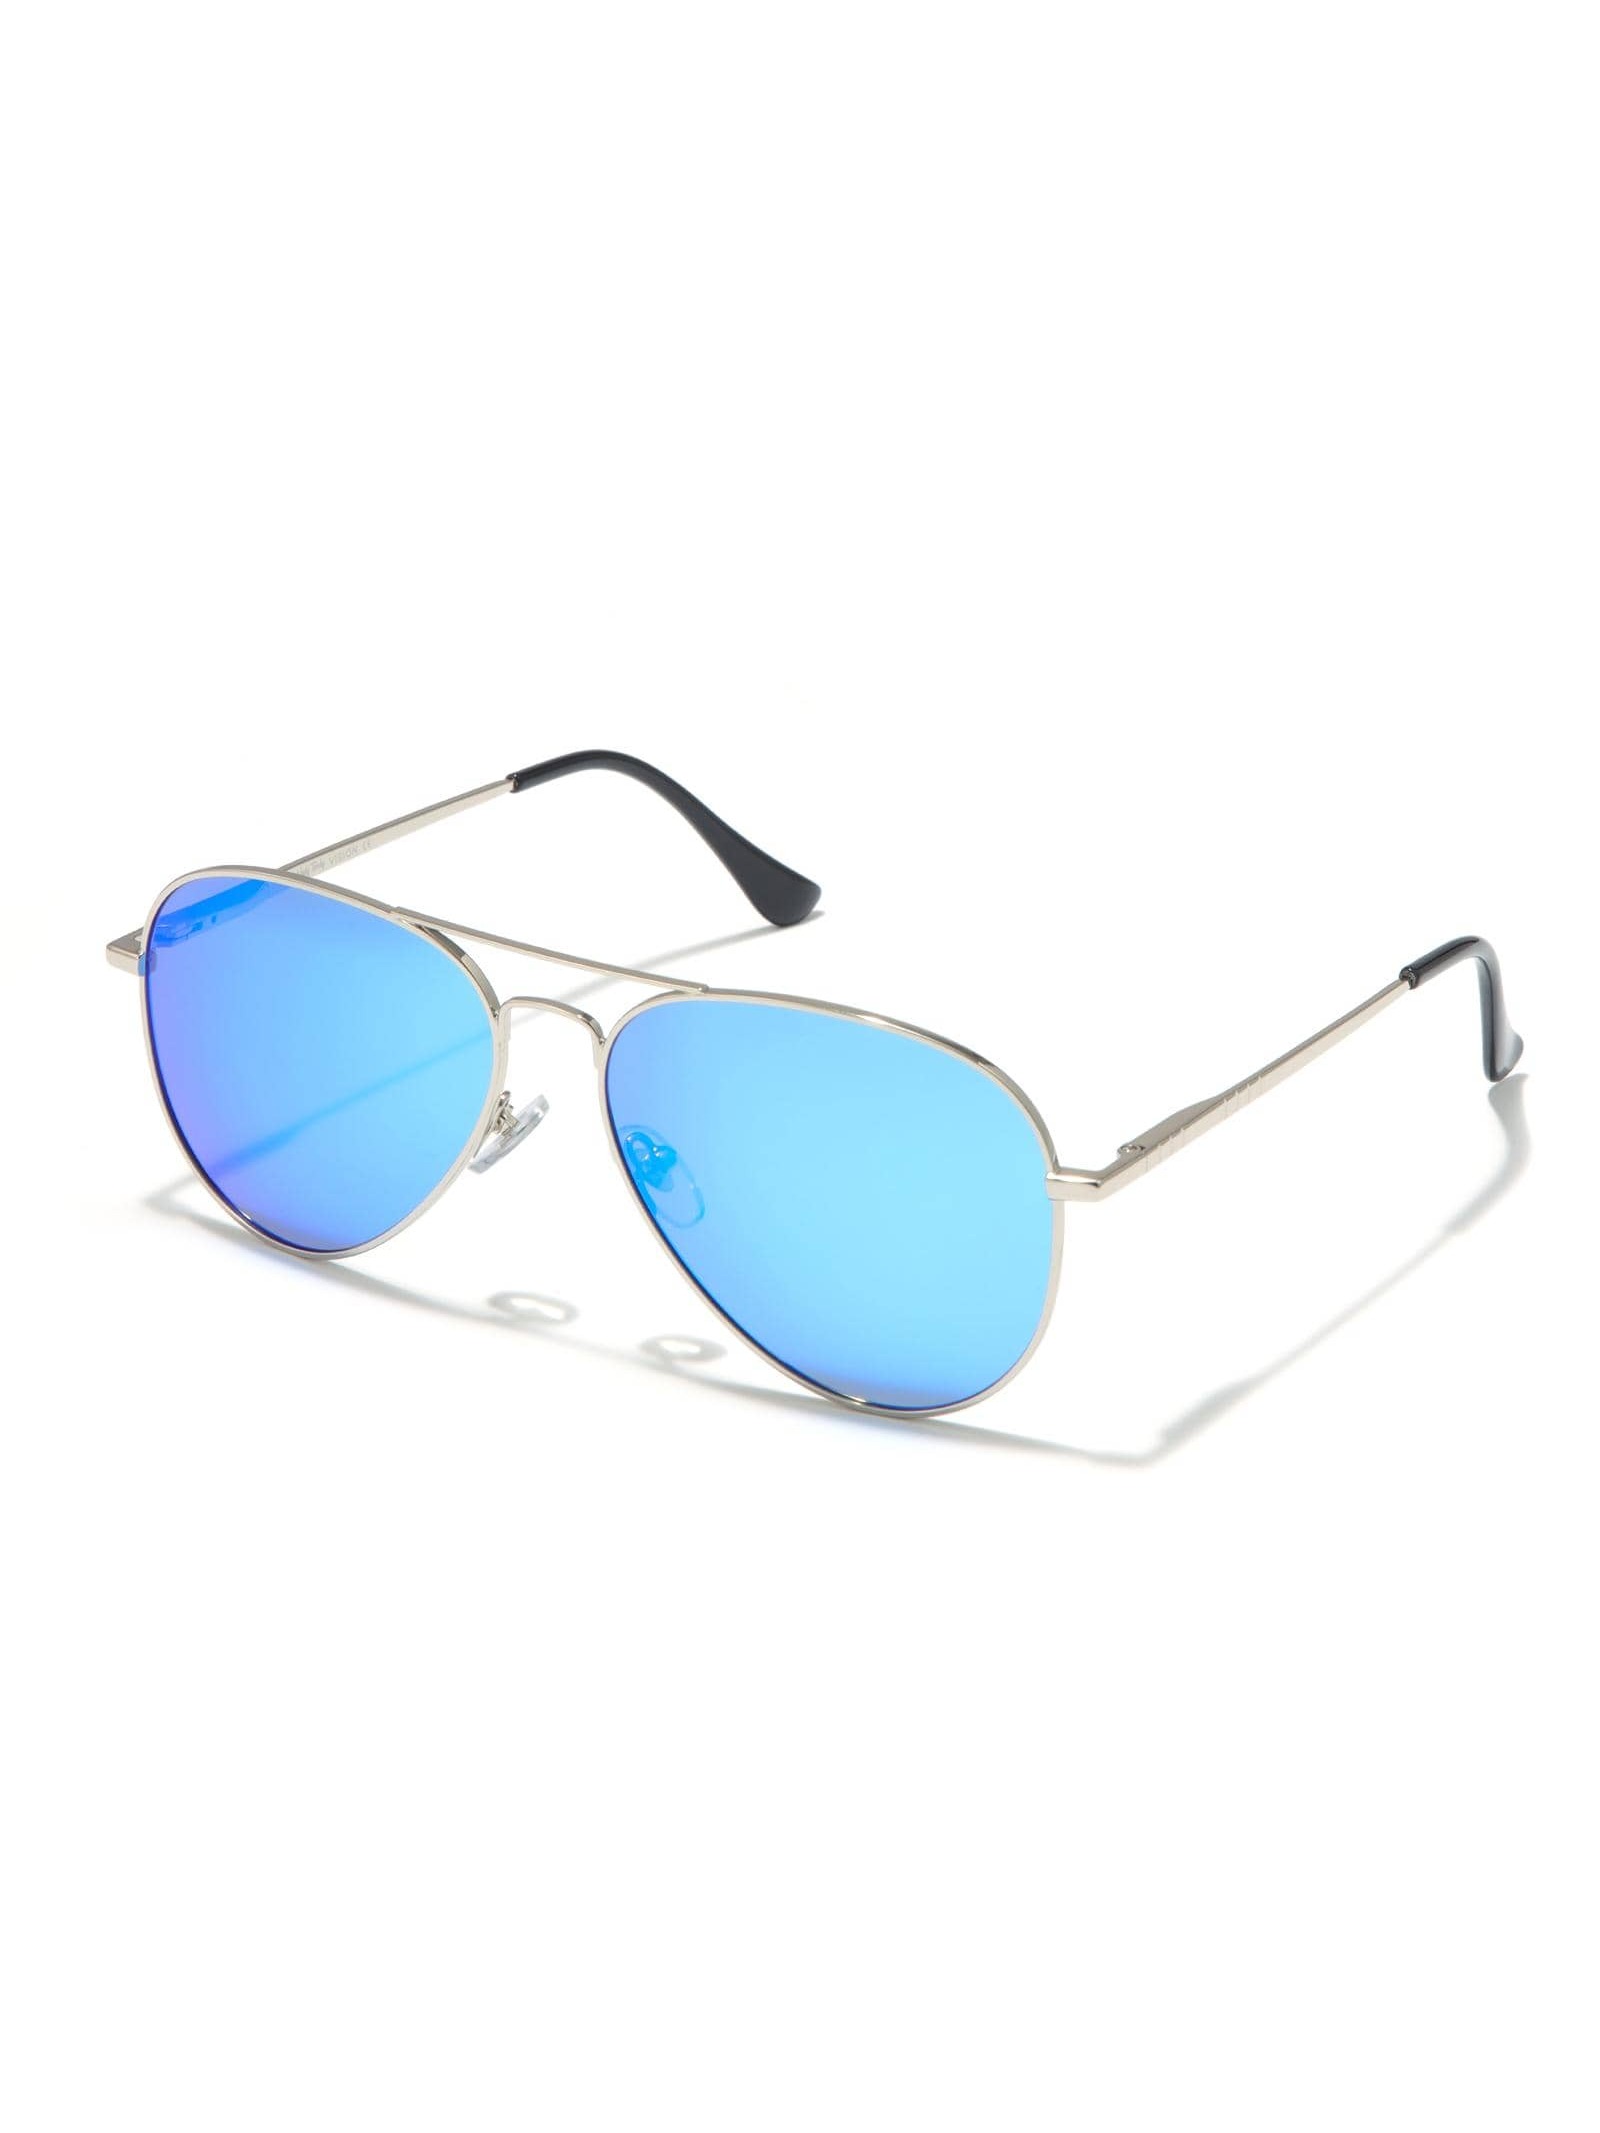 винтажные квадратные солнцезащитные очки авиаторы для мужчин и женщин Солнцезащитные очки-авиаторы Veda Tinda для женщин и мужчин